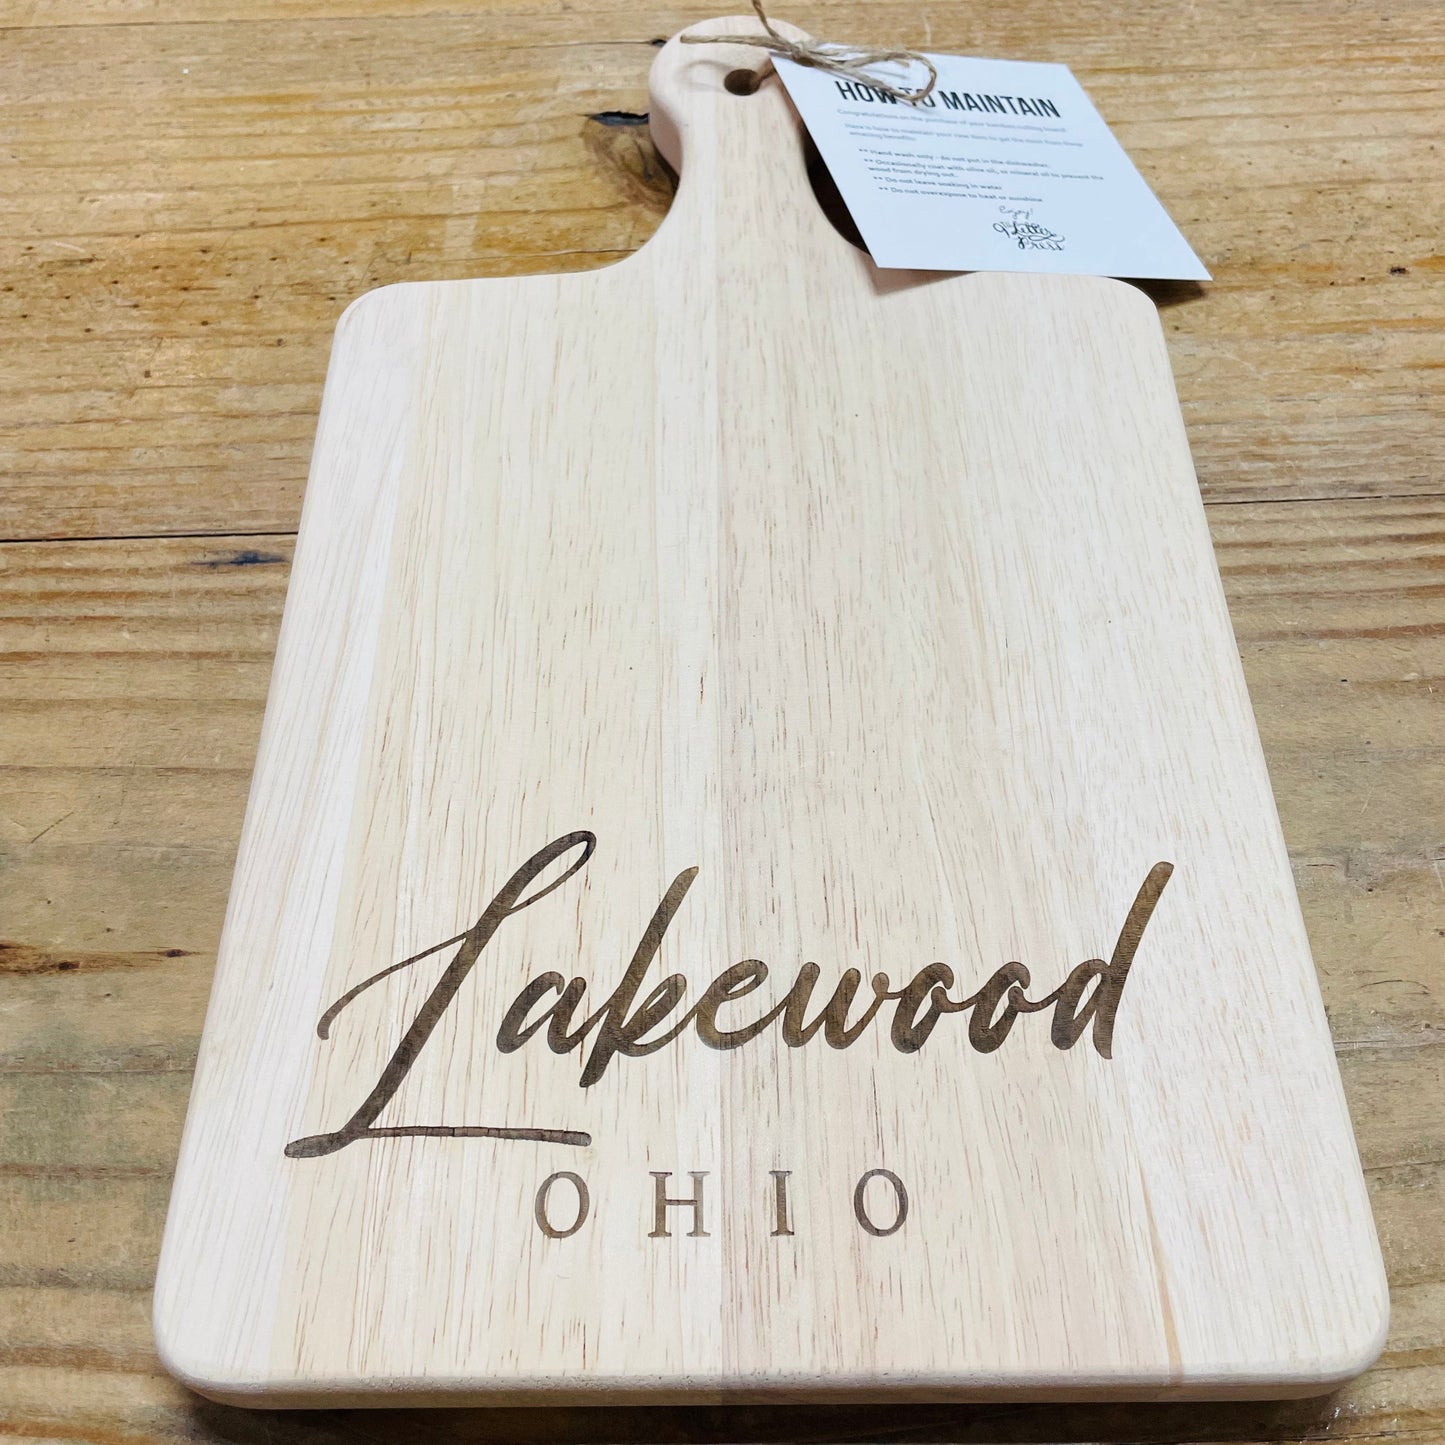 Lakewood, Ohio Cutting Board